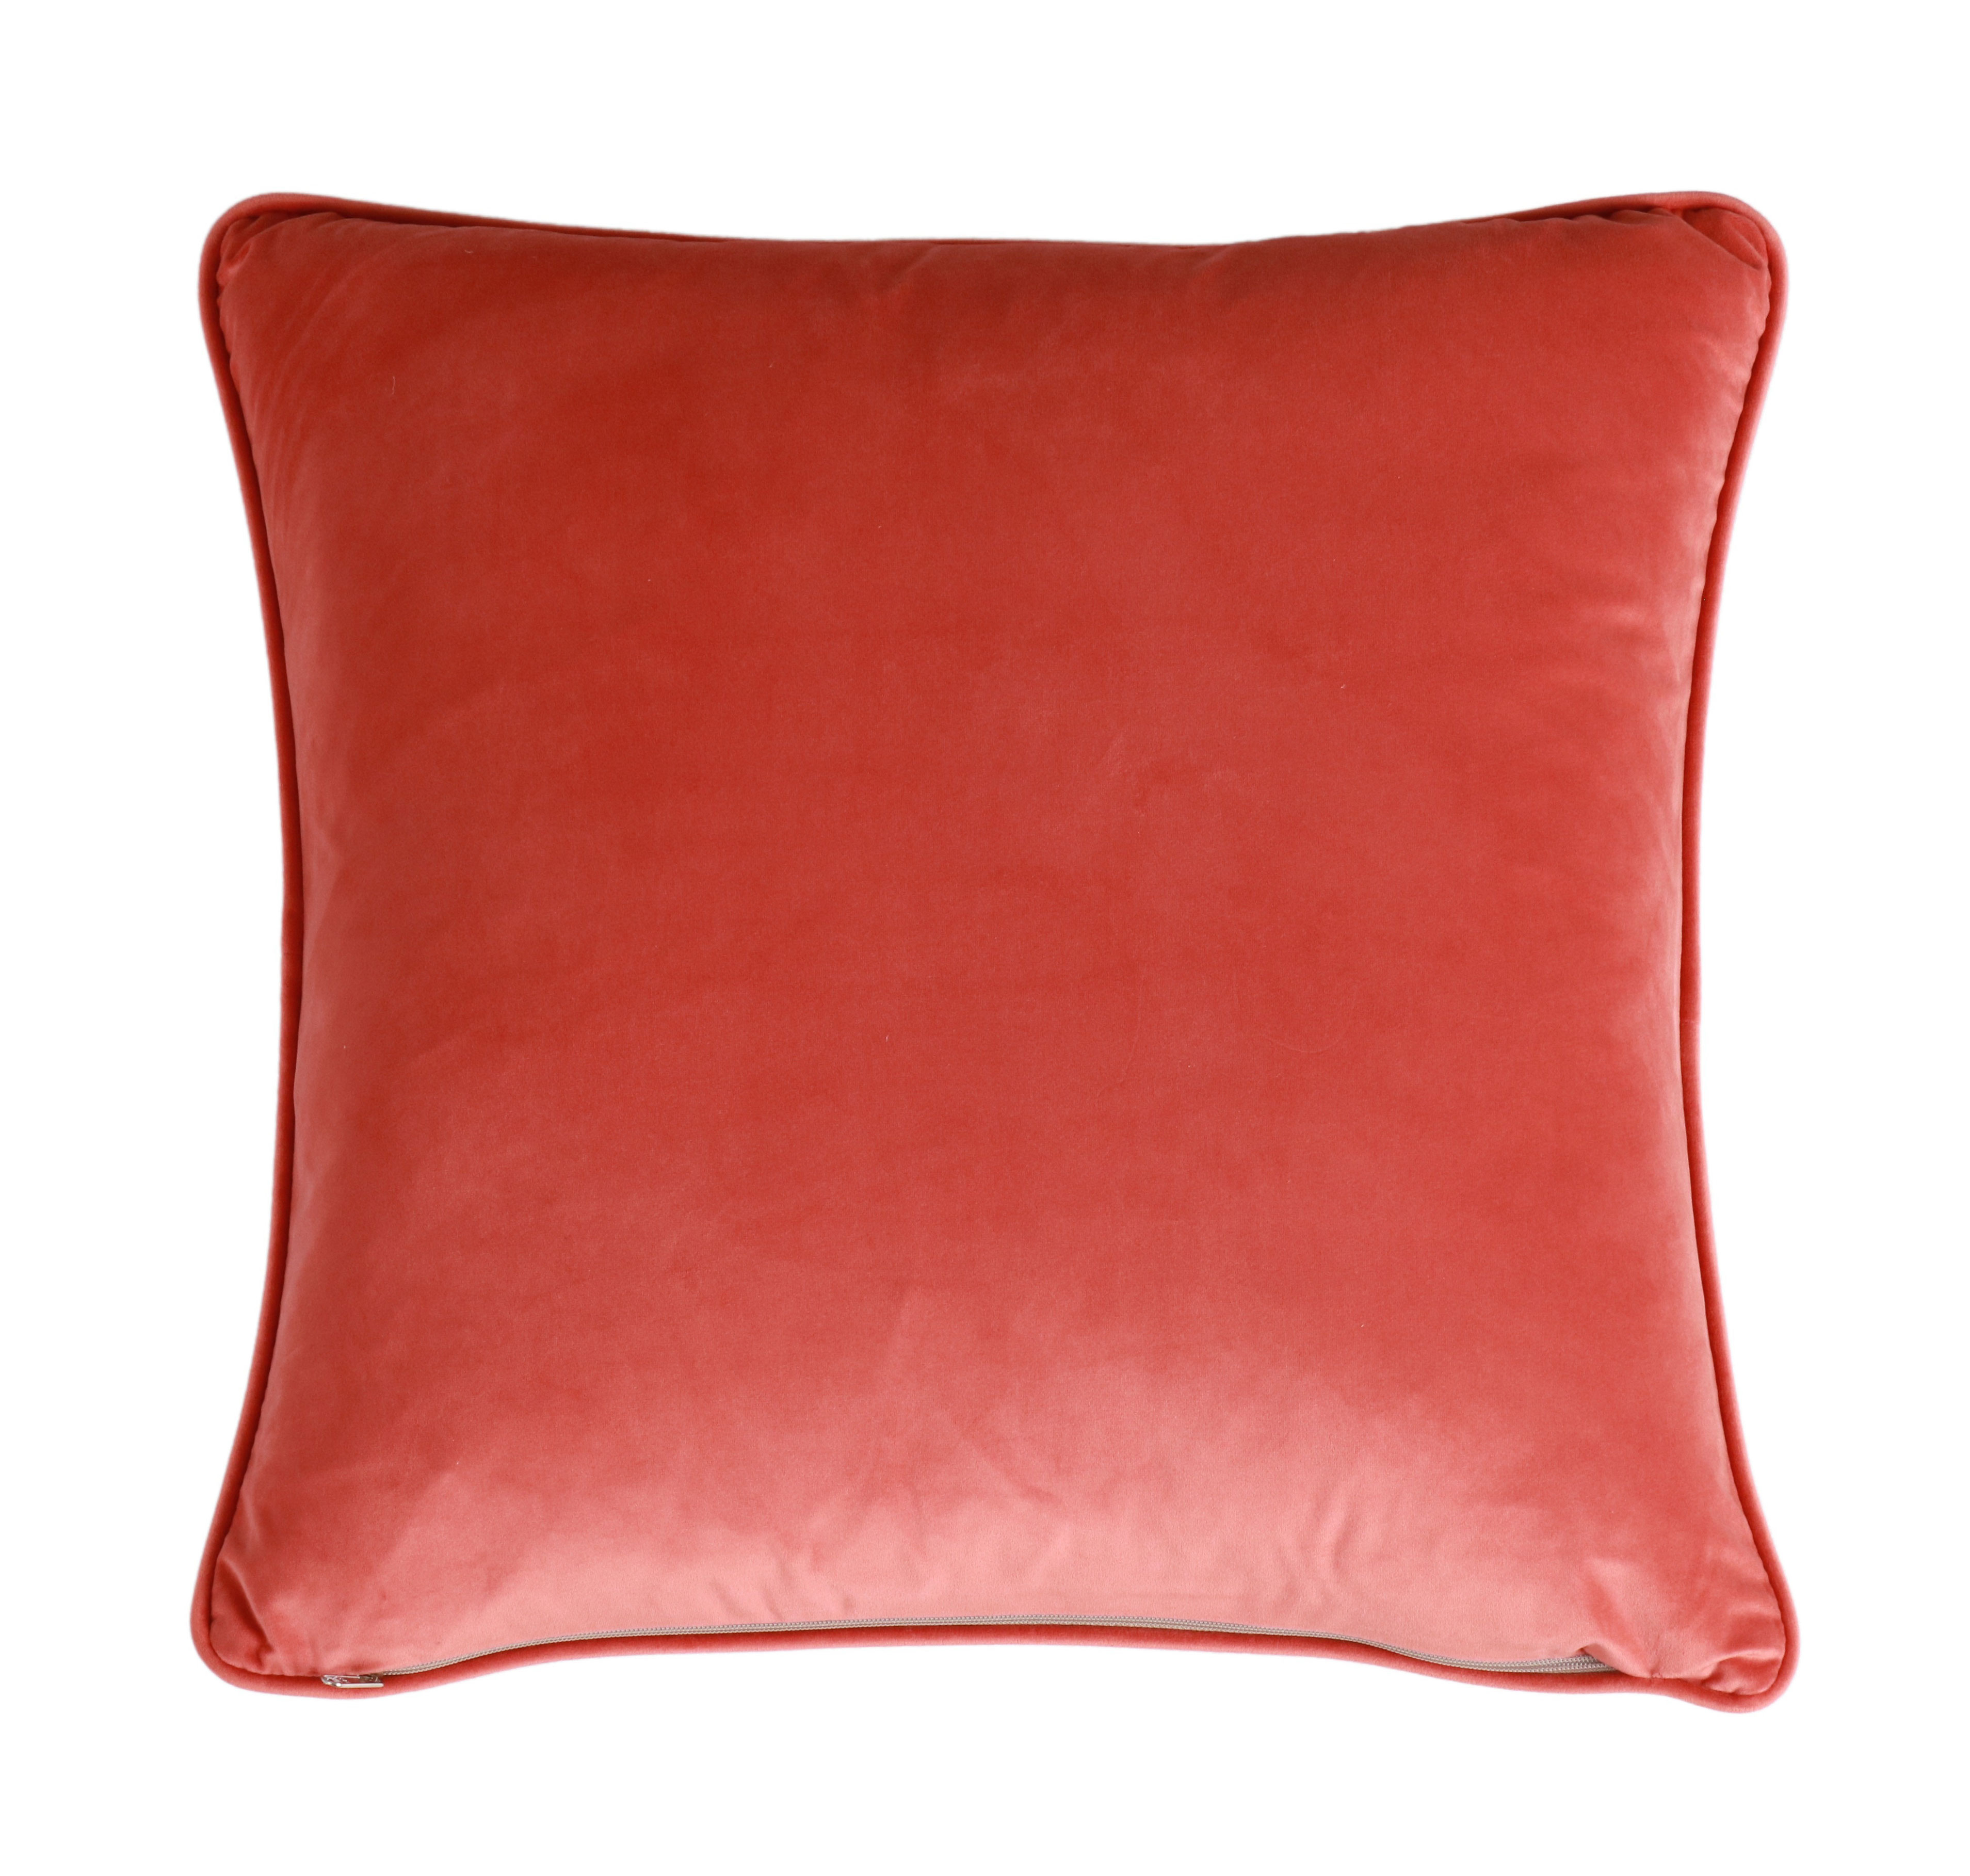 orange ikat print cushion with orange velvet backing